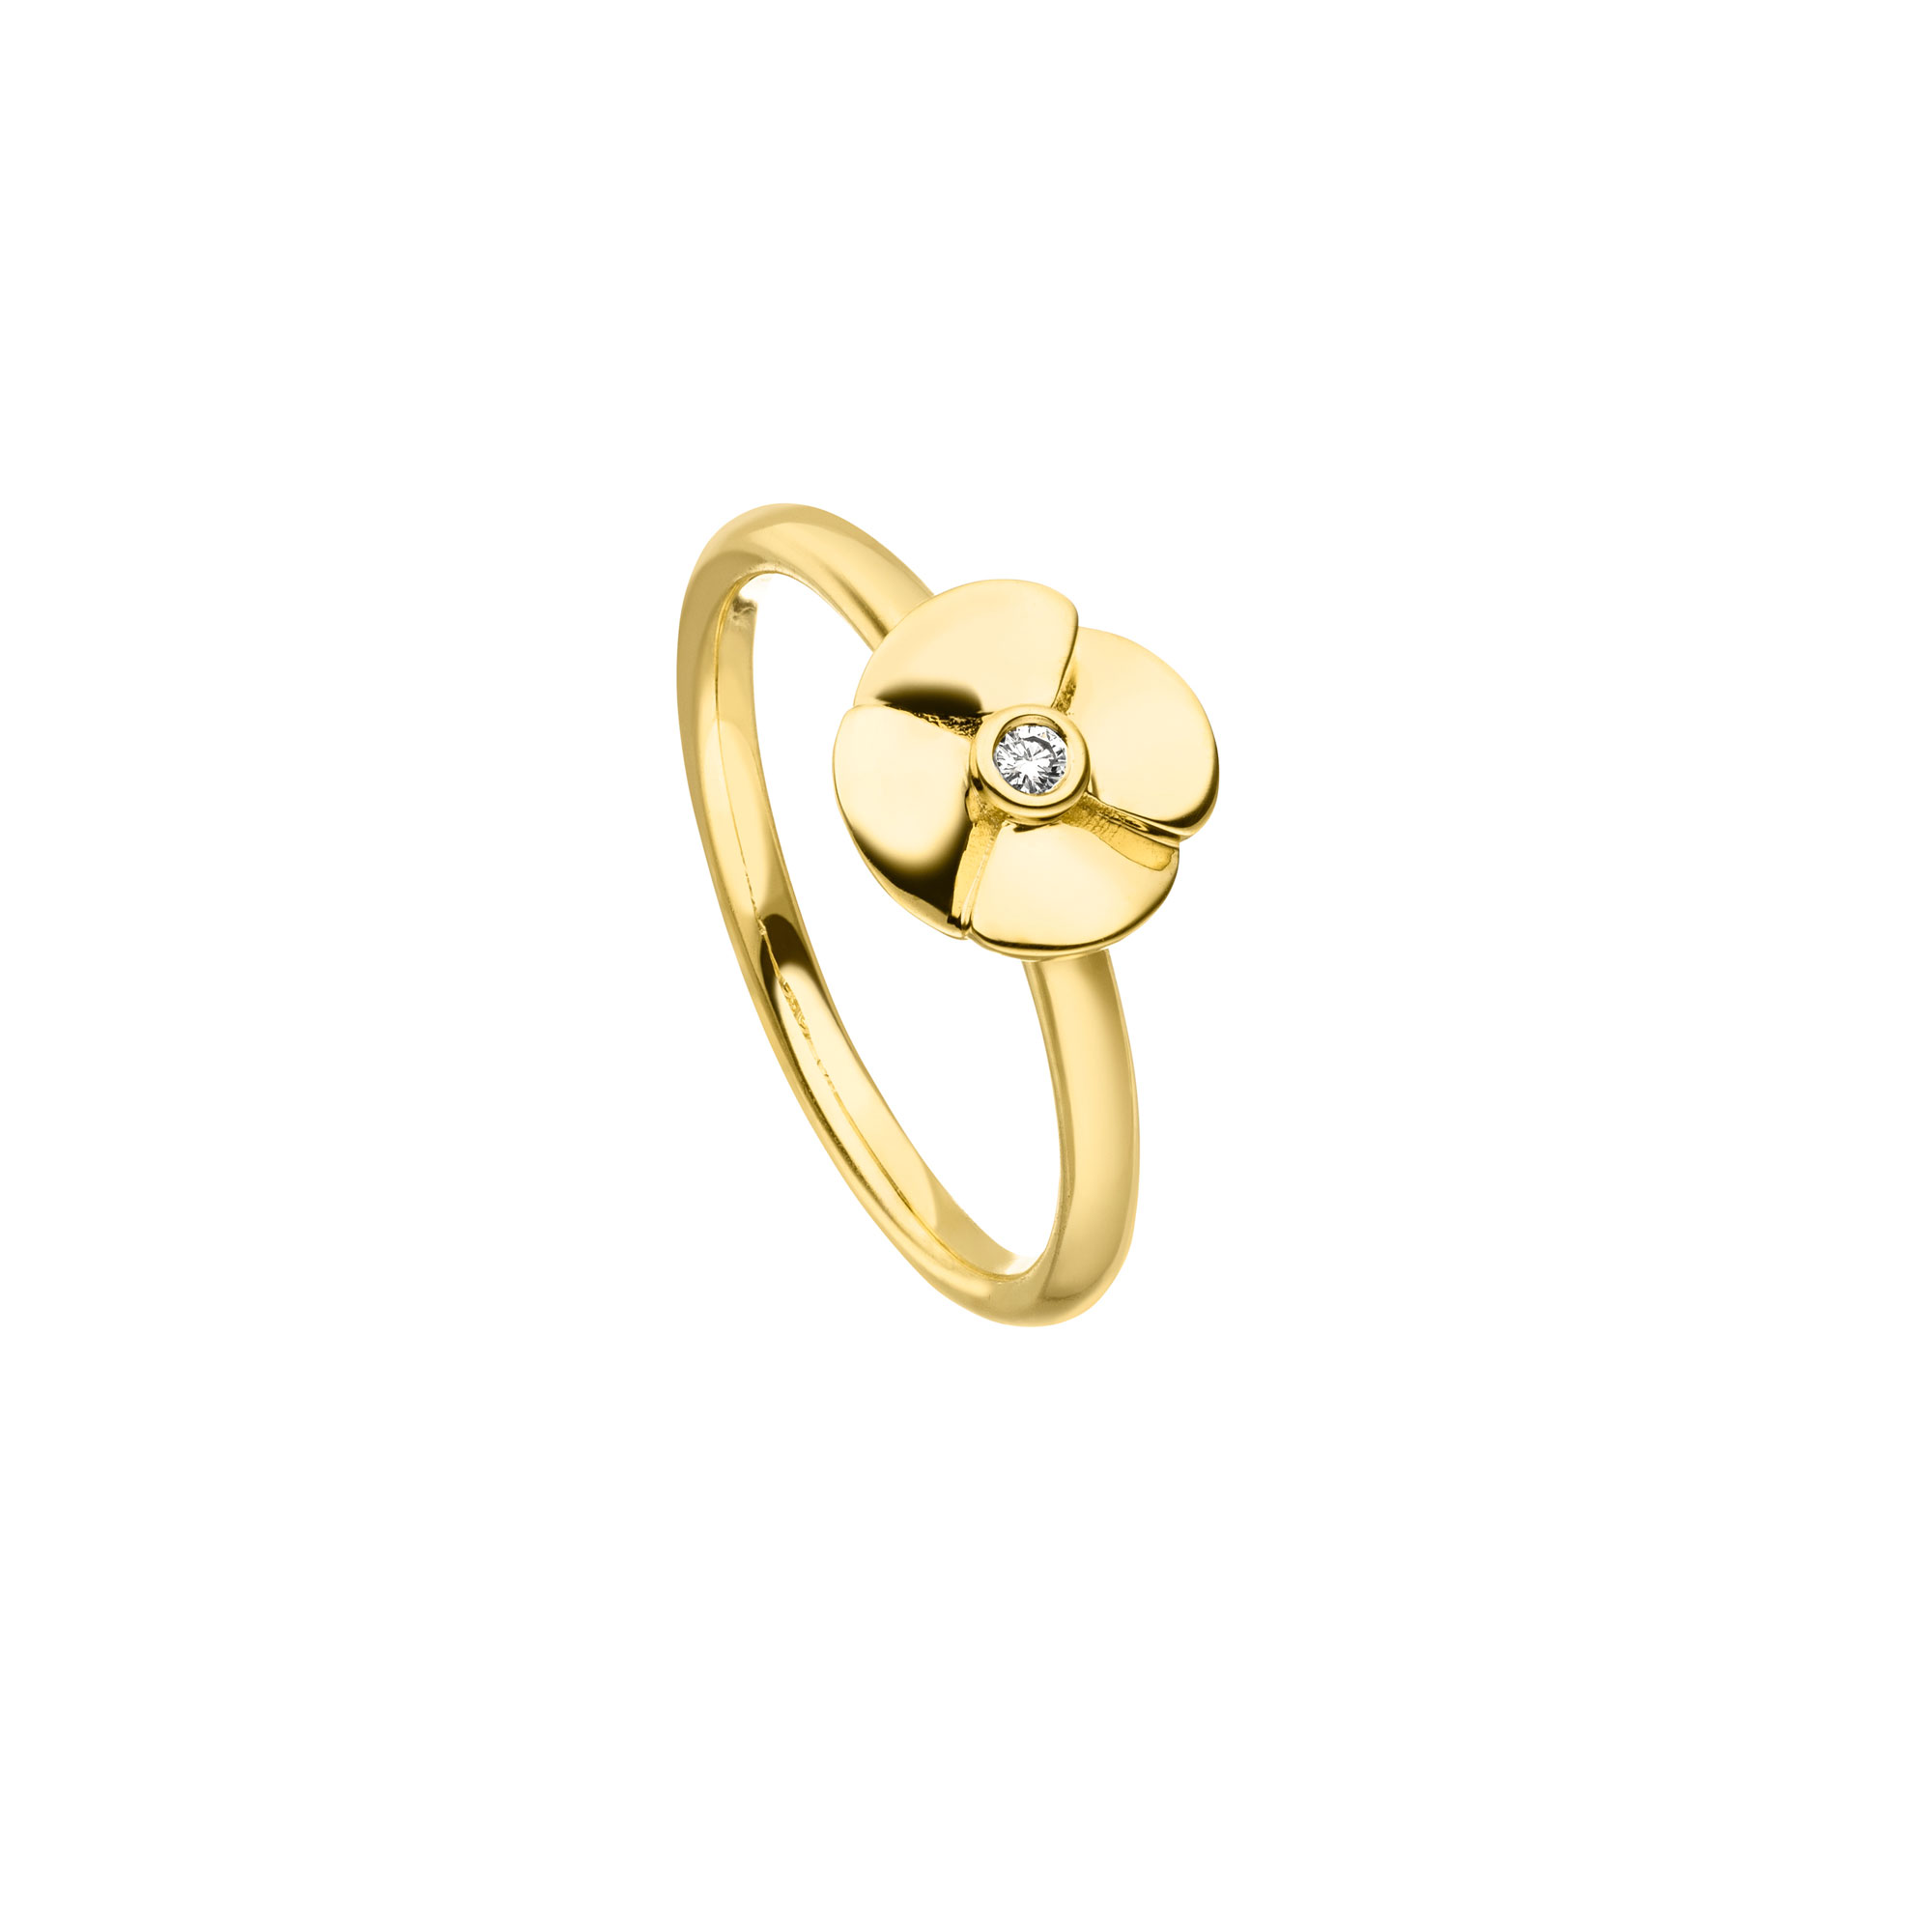 Gelbgold "Glückstreffer" Ring mit Brillant von Kollektion Fridrich bei Juwelier Fridrich in München